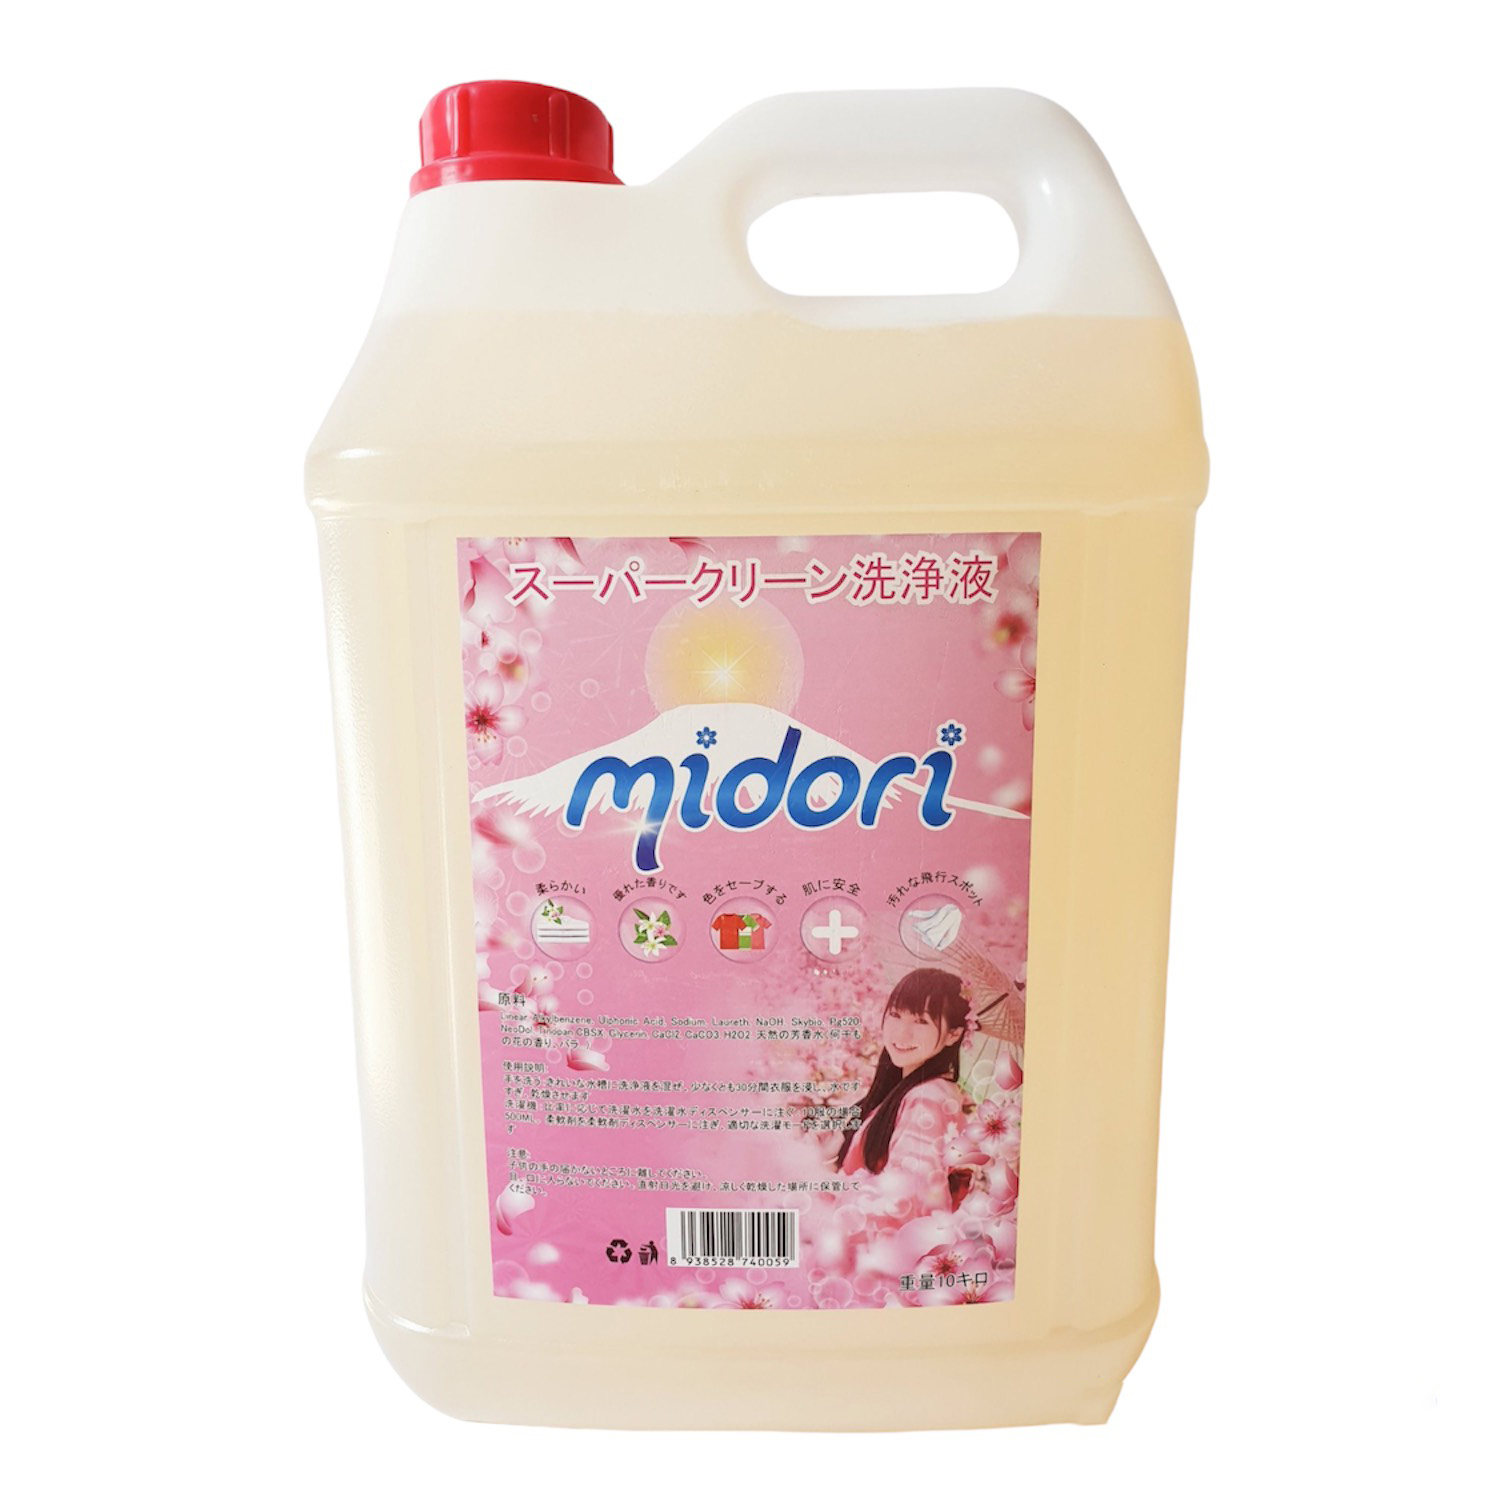 Nước giặt Midori can 10 lít